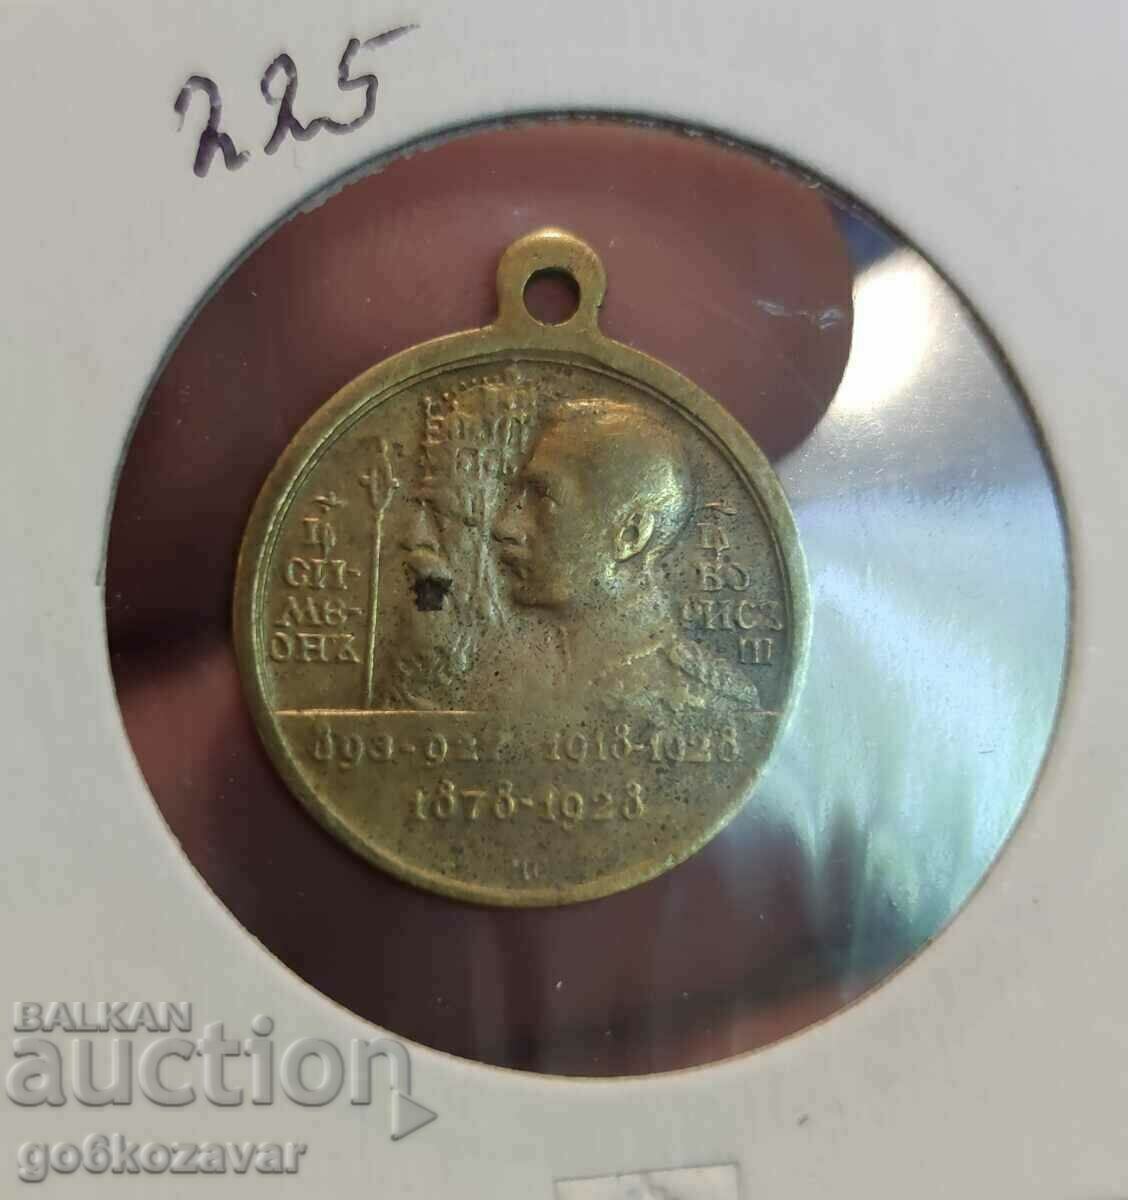 Bulgaria Medal token 1918-1928